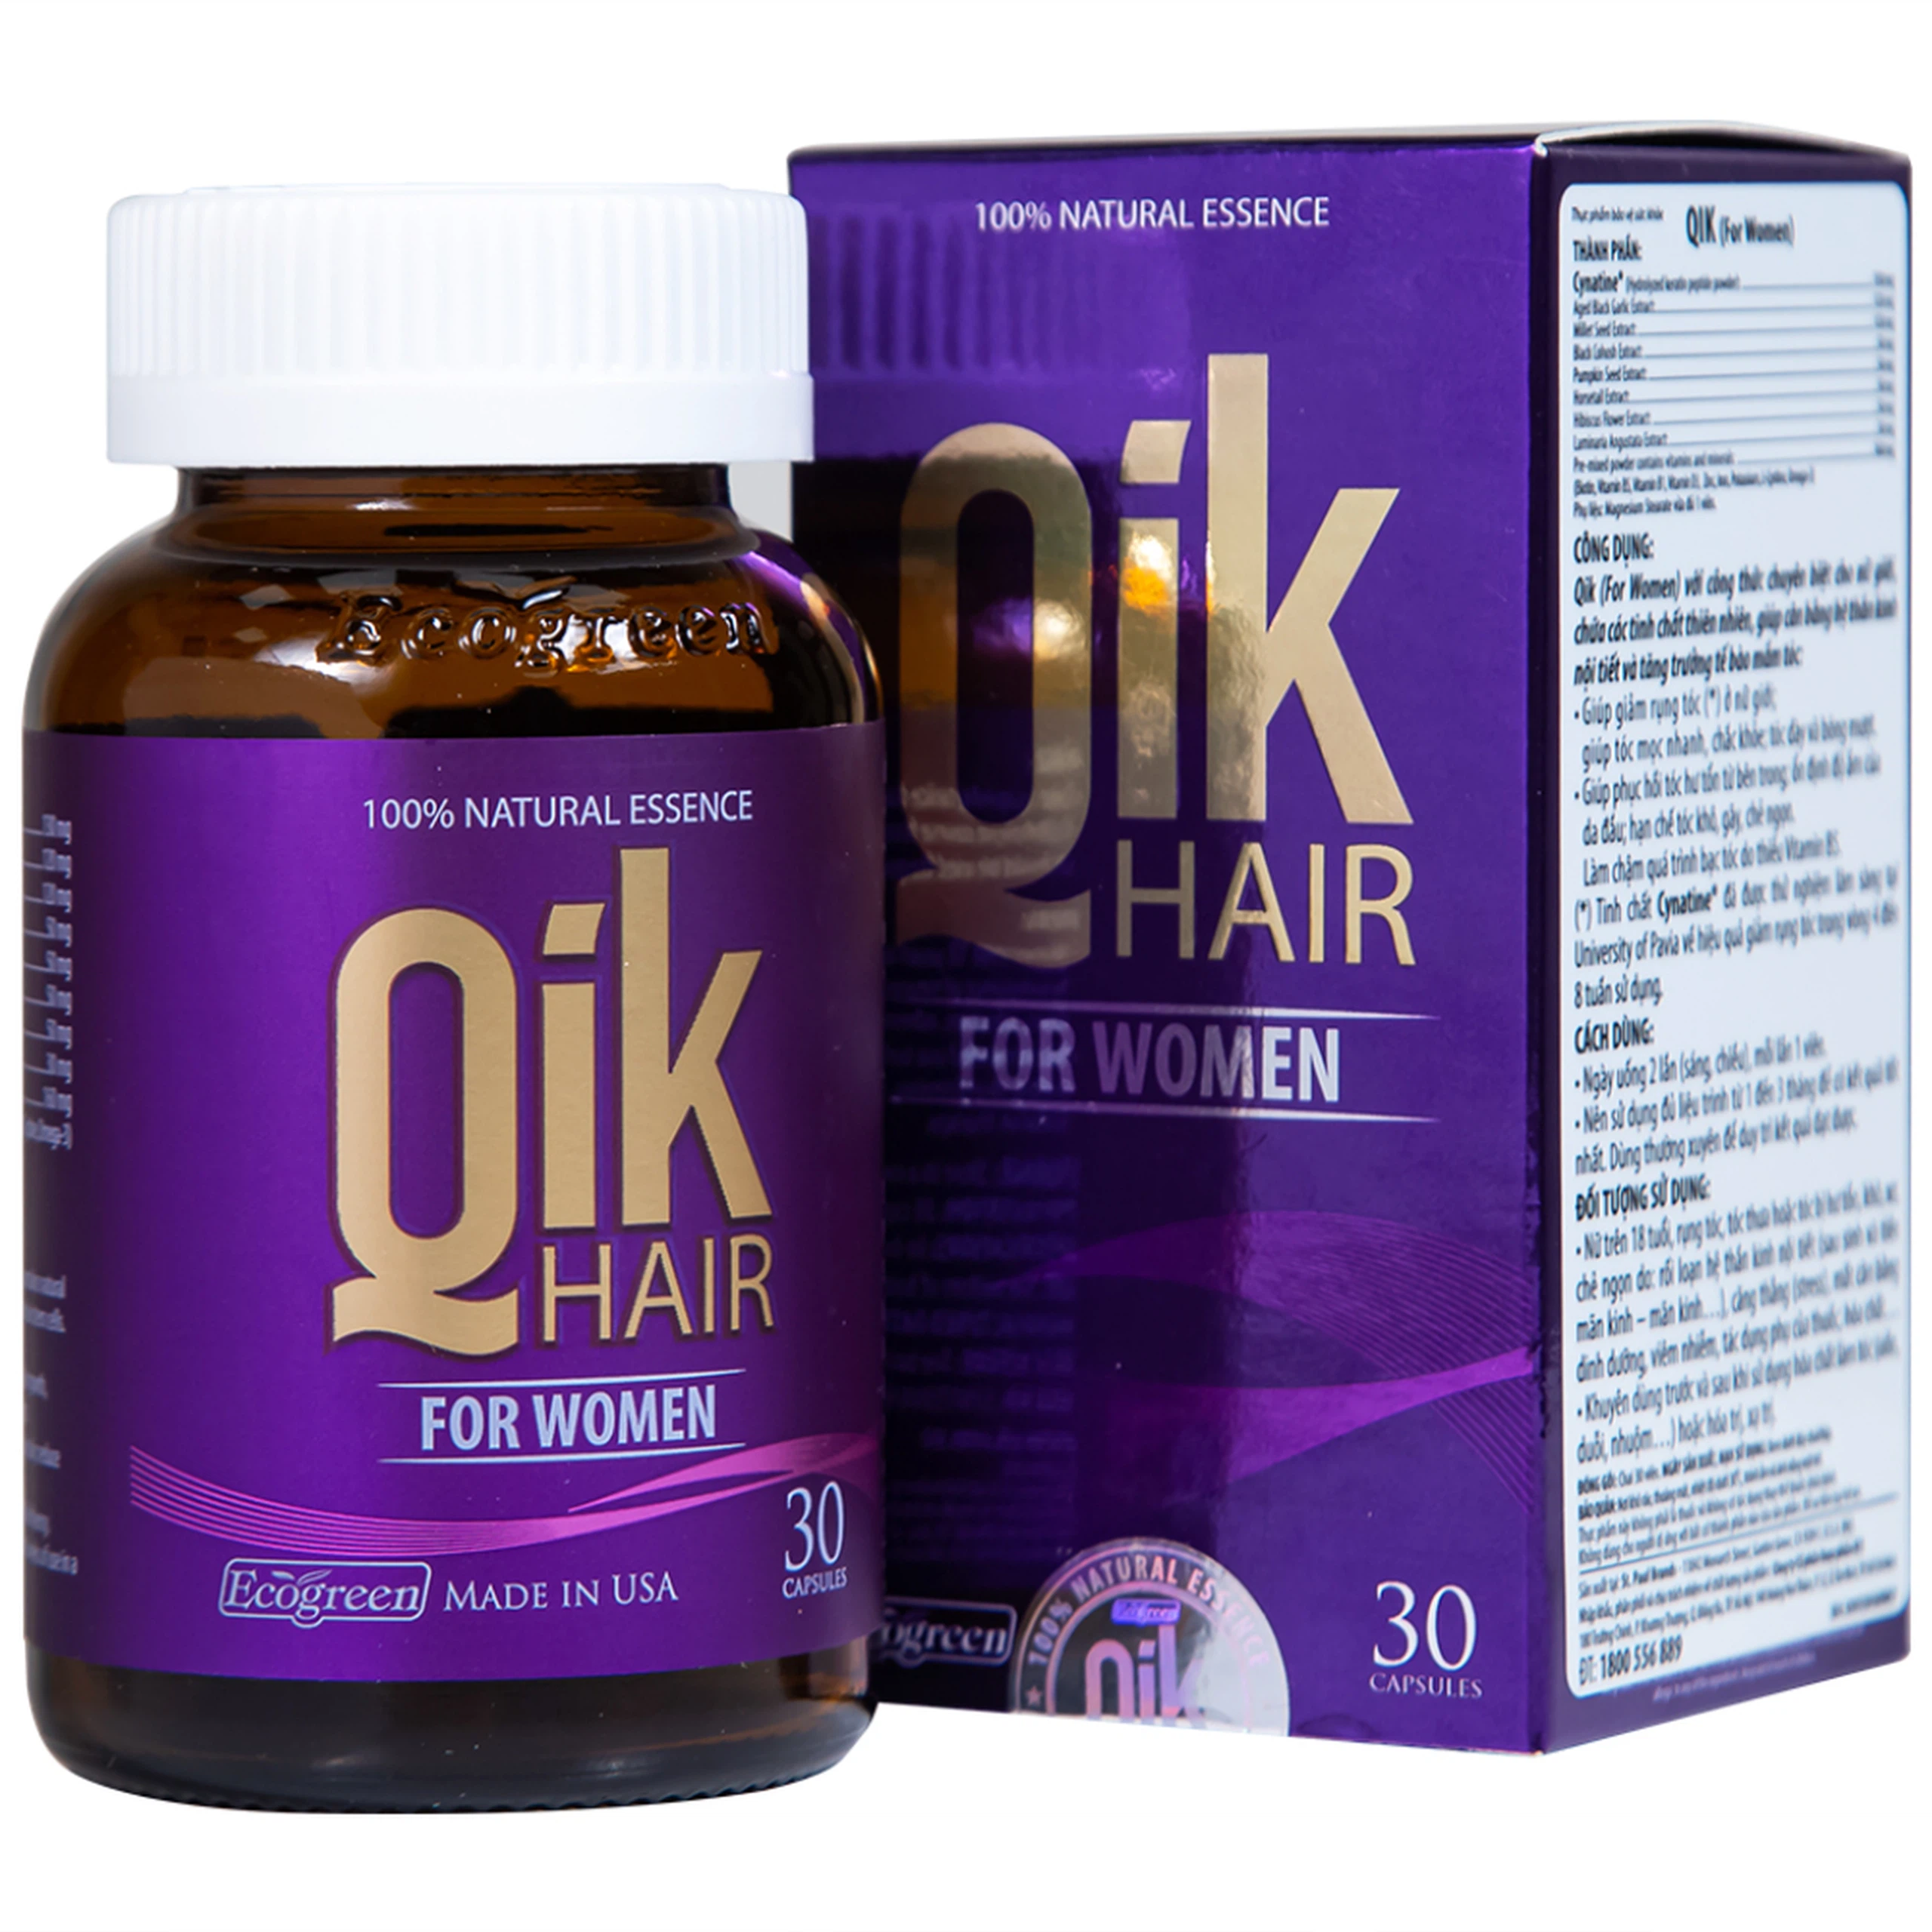 Viên uống Qik Hair For Women Ecogreen giúp giảm rụng tóc ở nữ giới, giúp tóc mọc nhanh (30 viên)